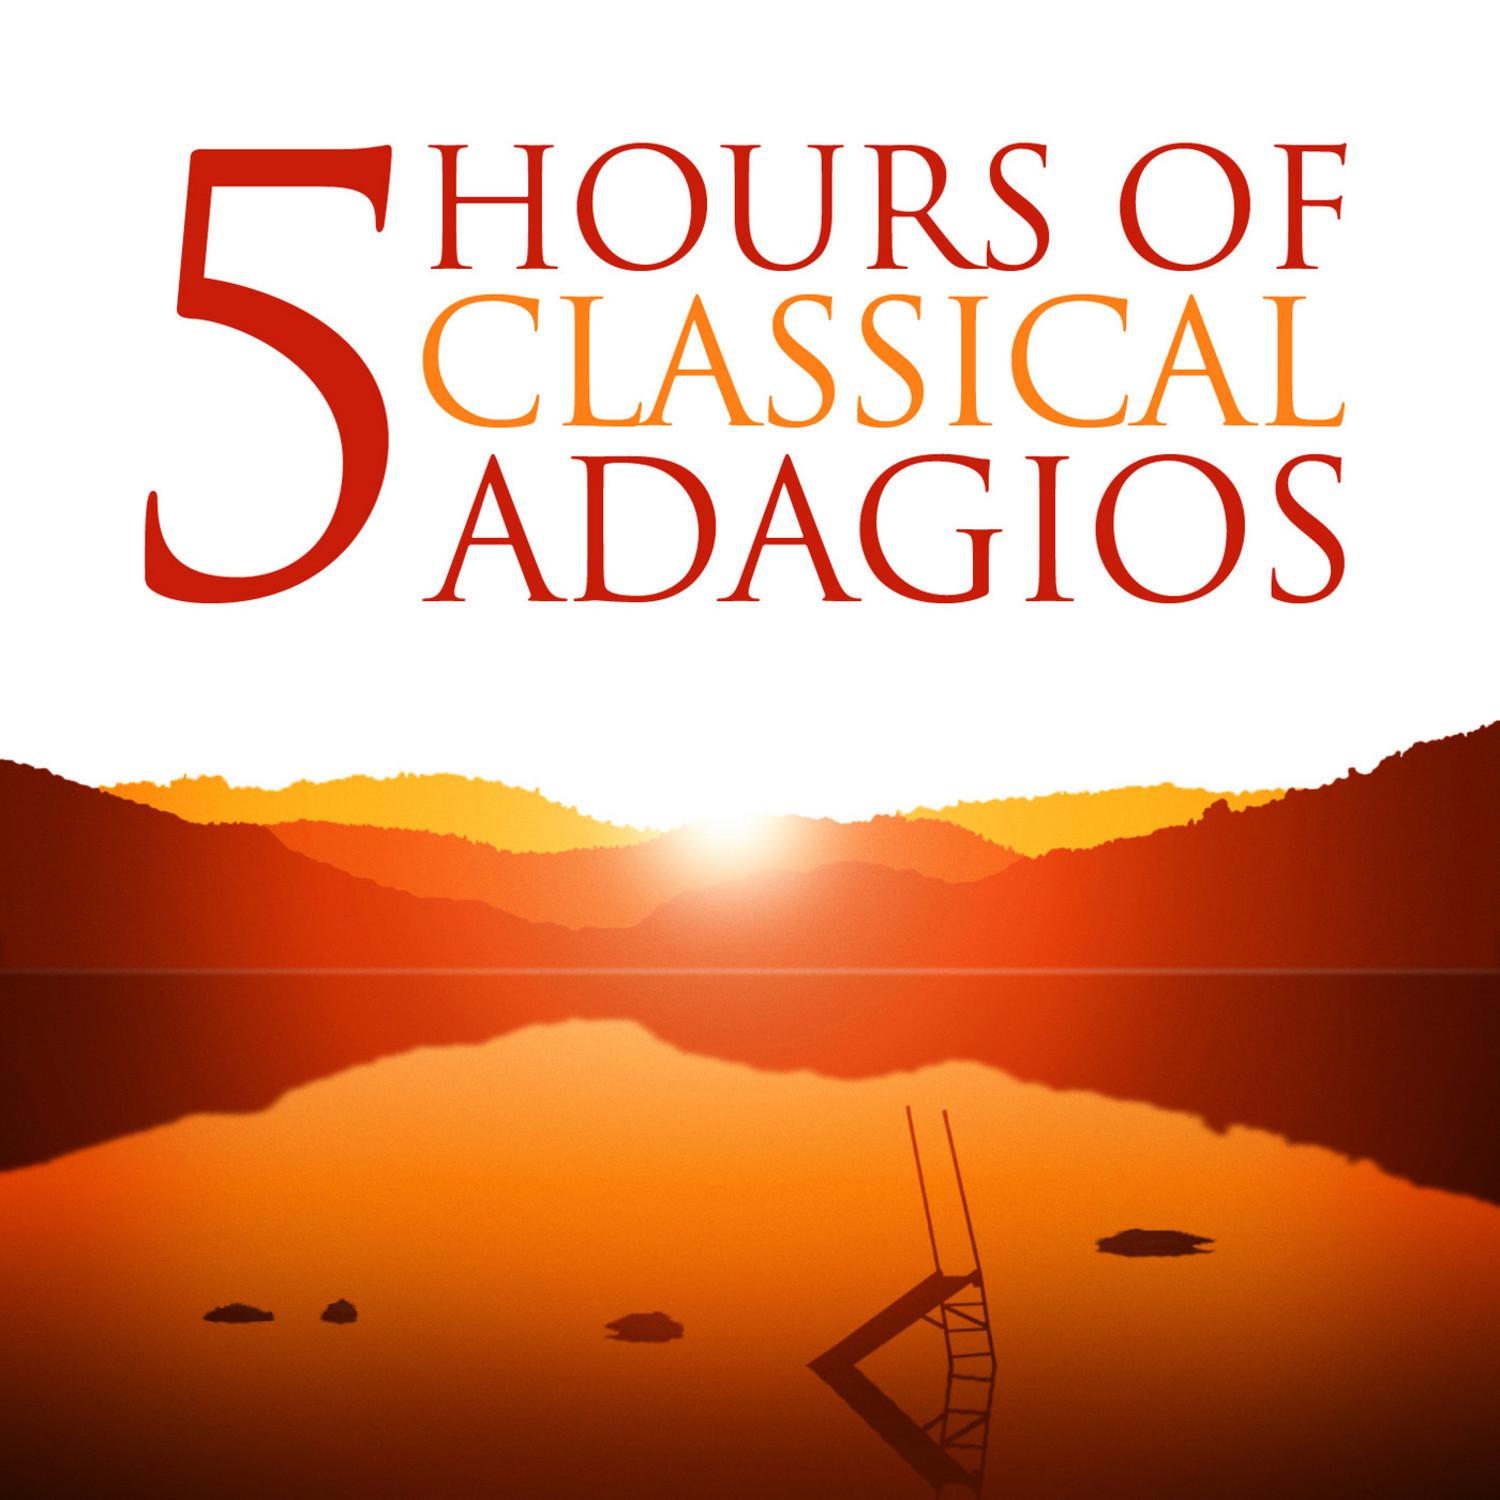 Sonata No. 3 in D Minor for Violin and Piano, Op. 108: II. Adagio